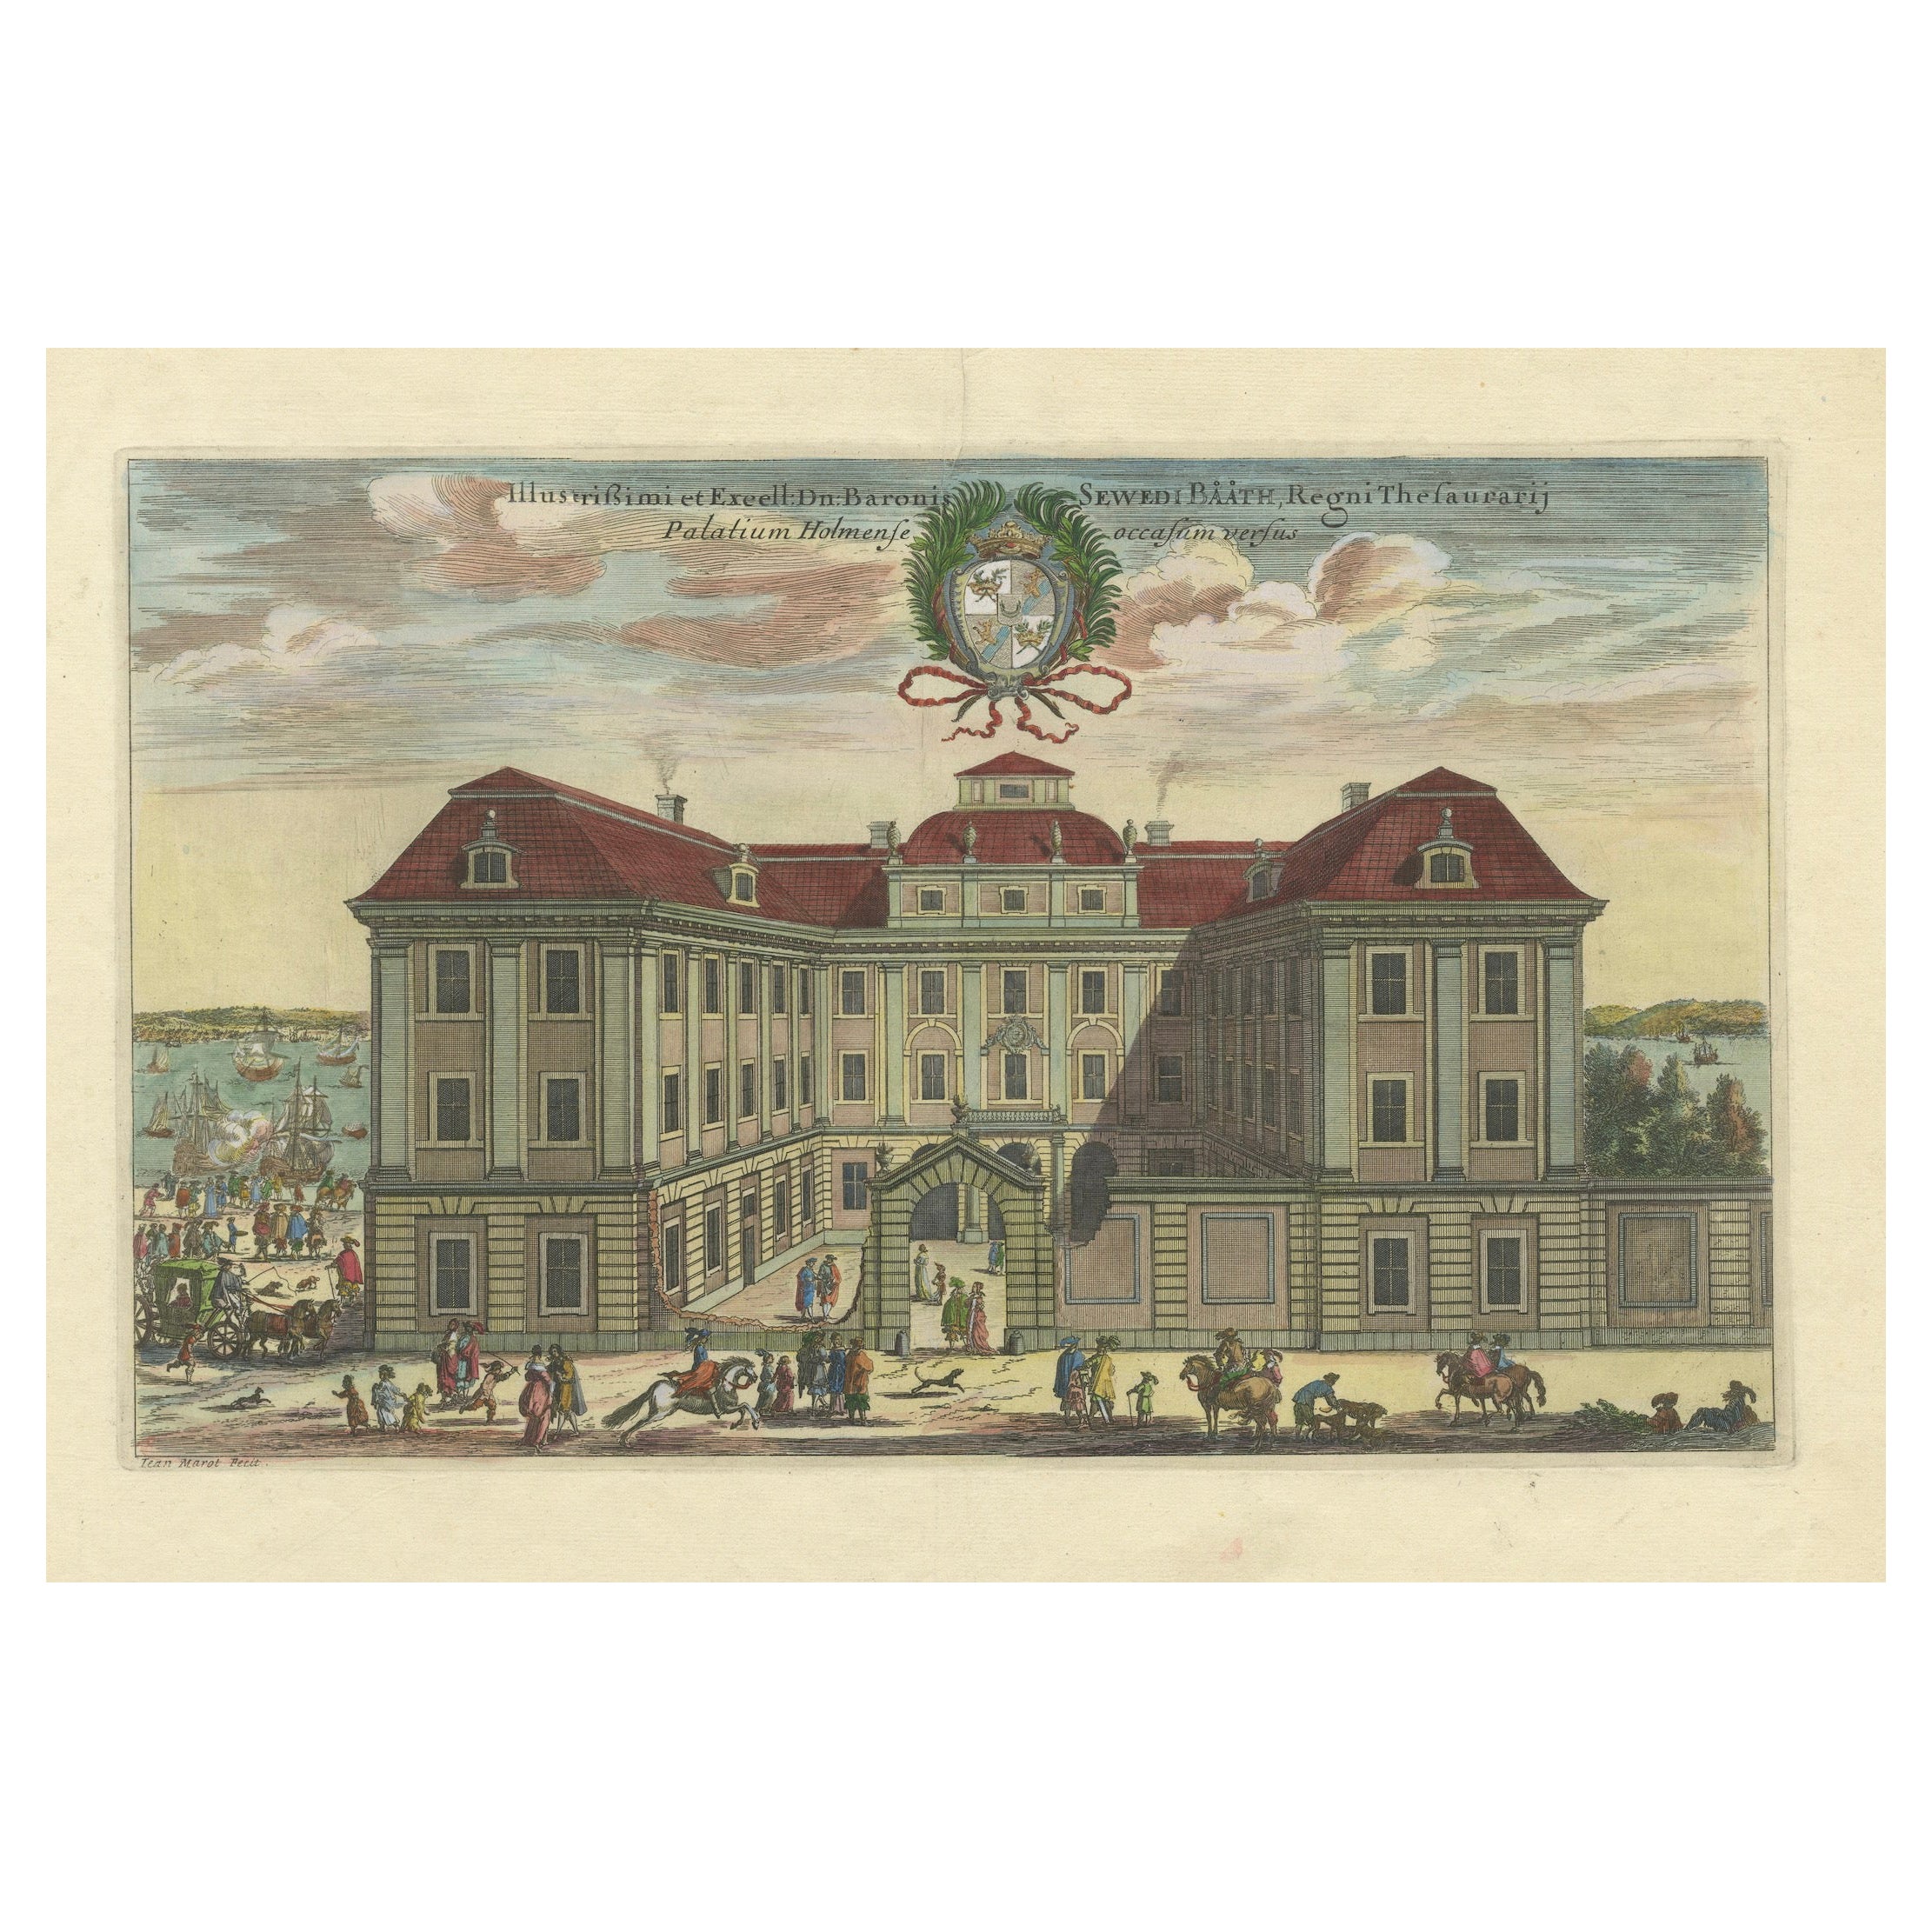 The Bååtska Palatset: Ein Stockholmer Schatz von Dahlbergh, 1707